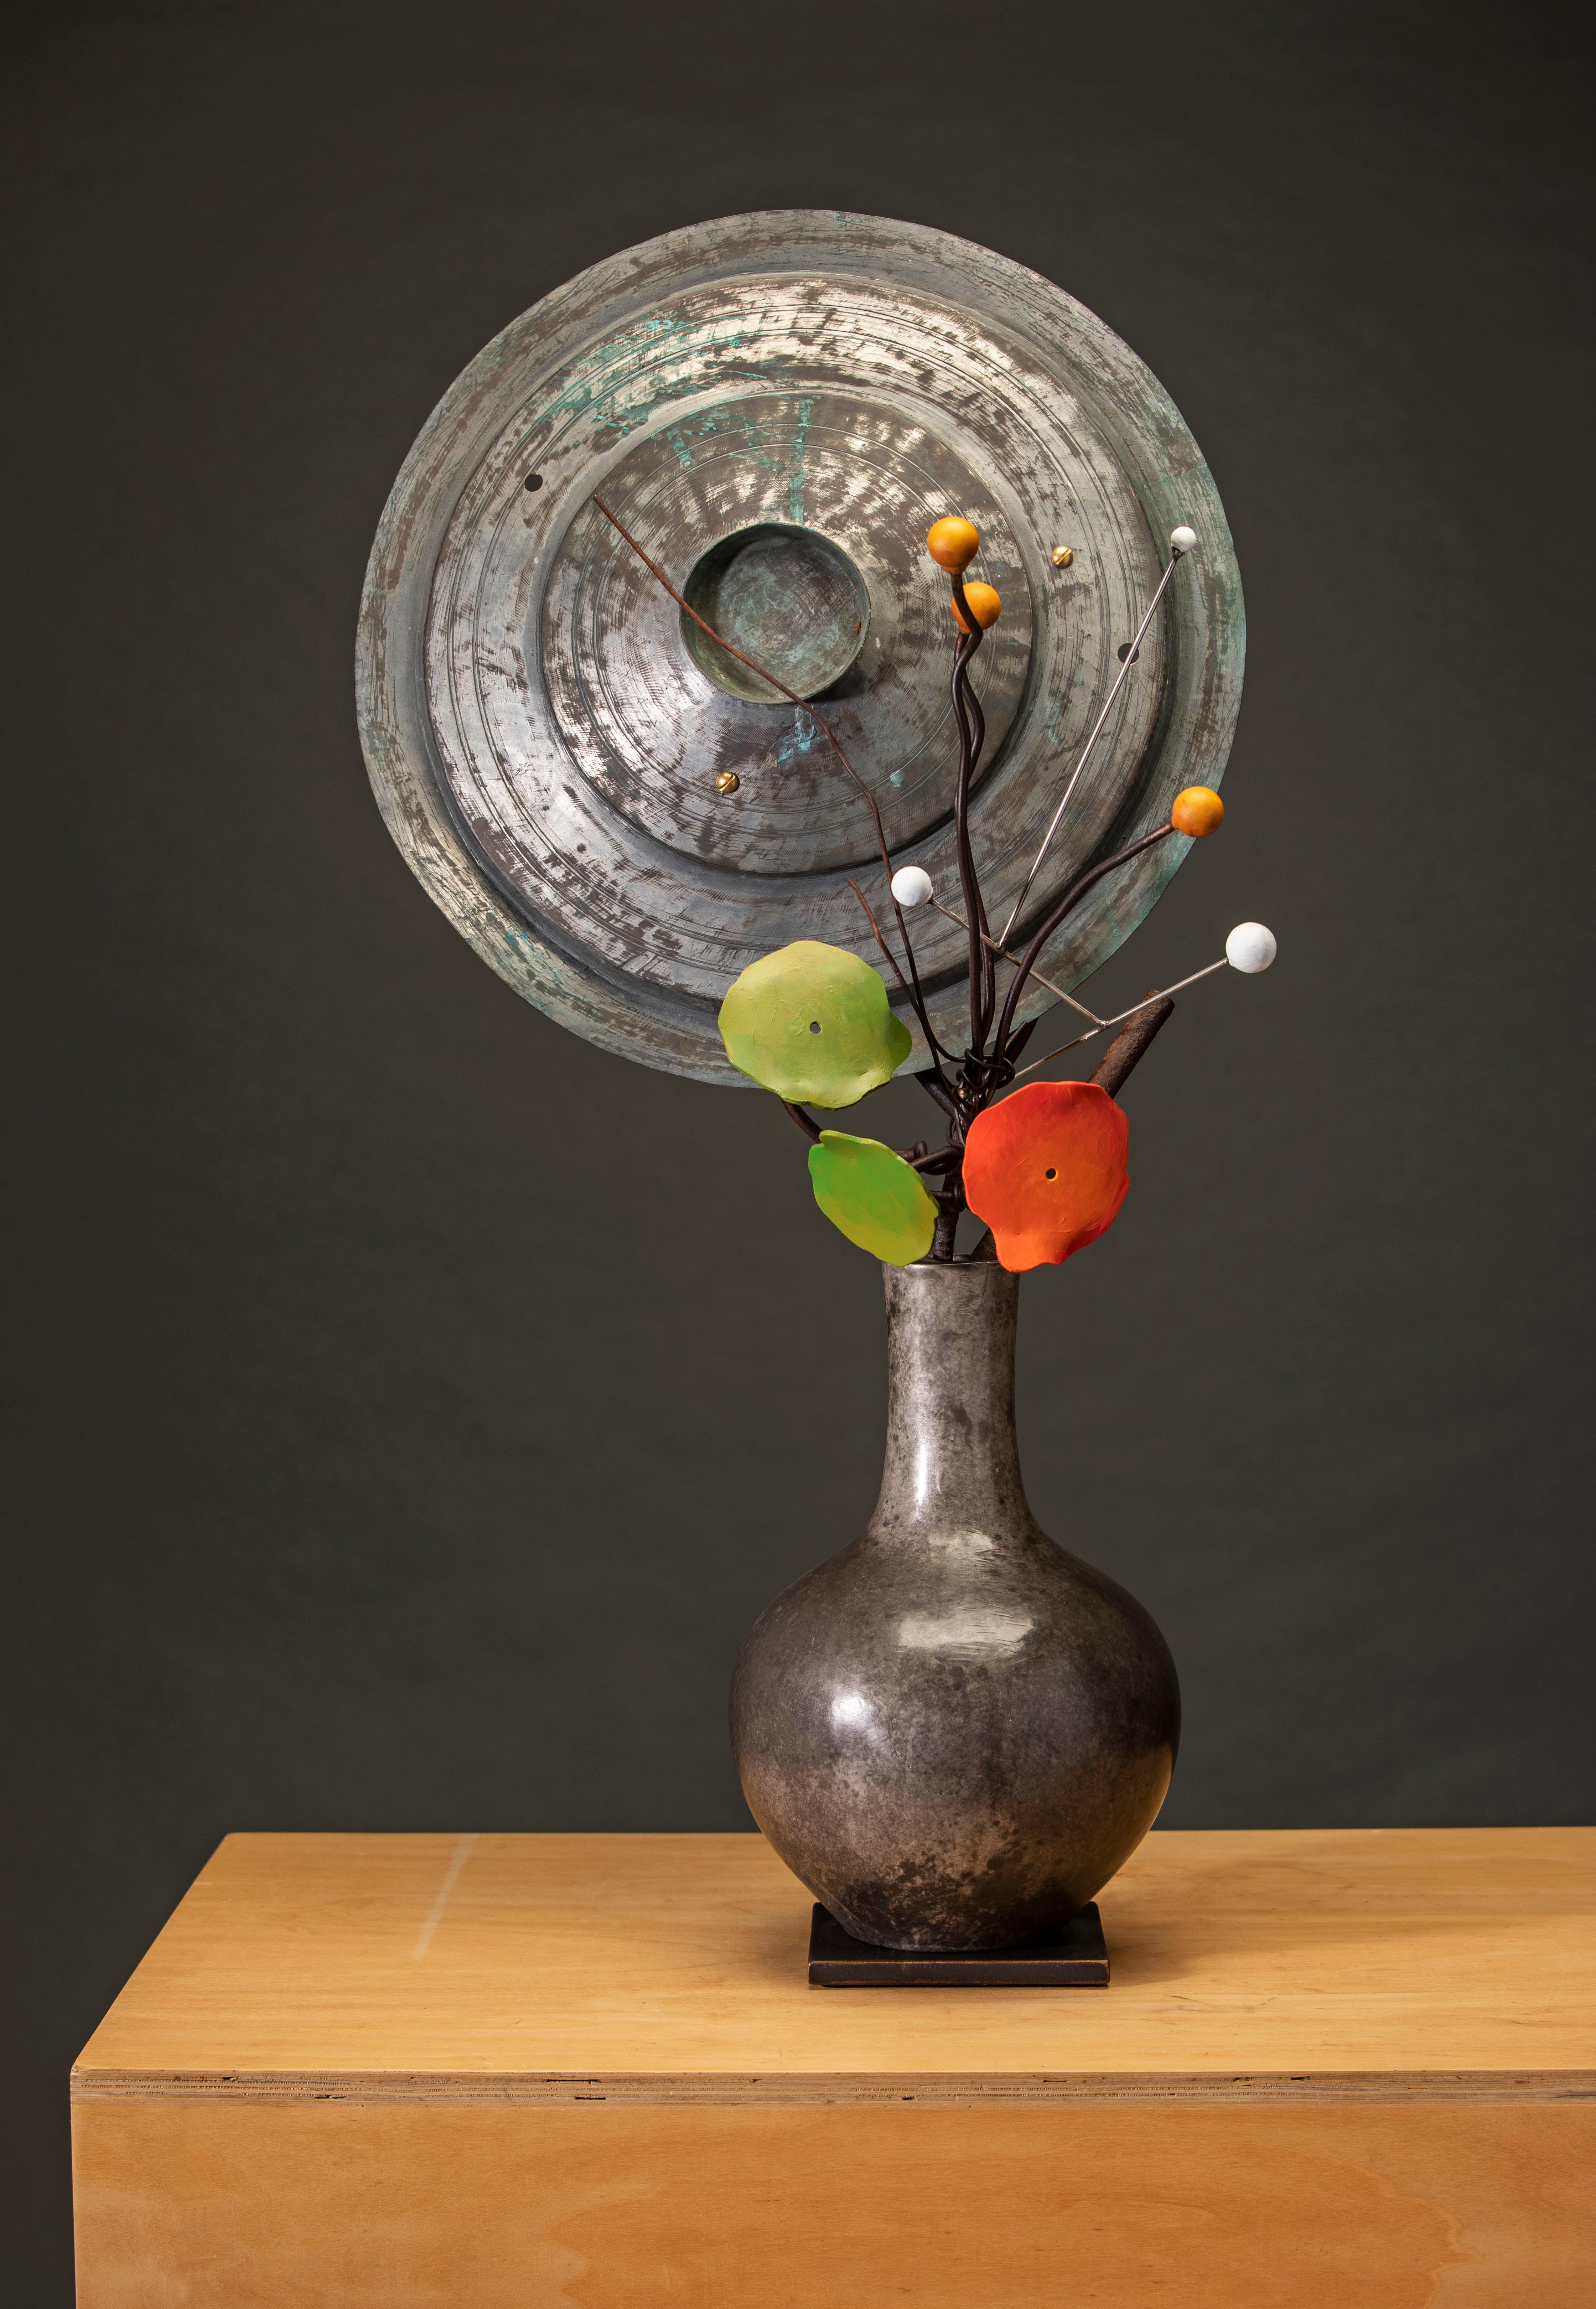 "Planètes, graines, capucines" par David Kimball Anderson, 2022. Bronze, acier, et peinture, 36 x 17 x 10 in. Cette sculpture présente un vase arrondi coulé en bronze et fini en patine grise. Il présente une série de branches en bronze et deux